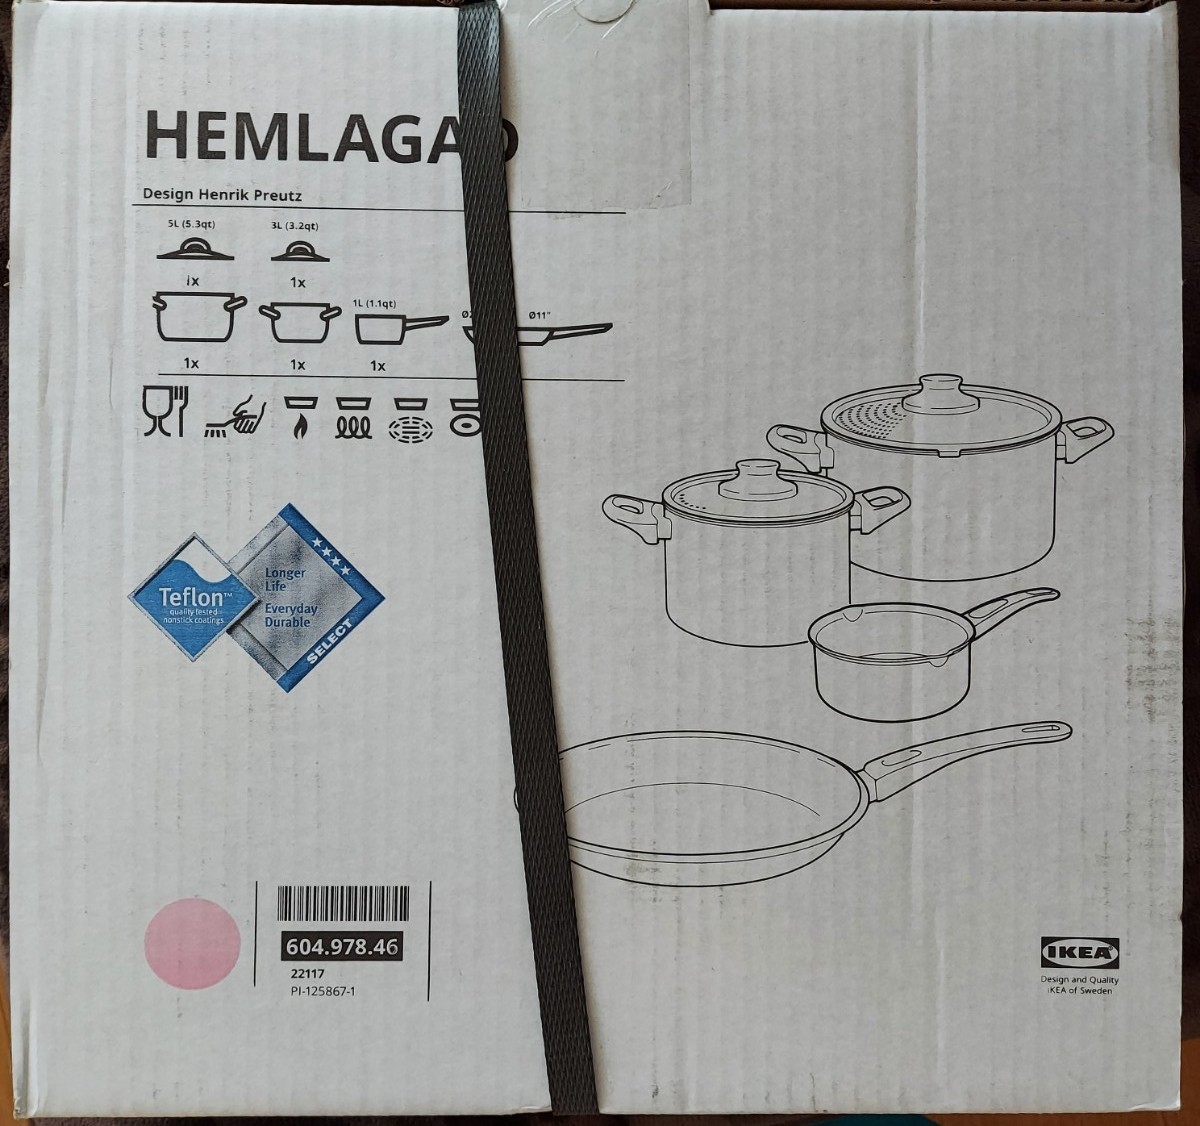 IKEA 鍋ふた付き 新品未使用 3L.鍋 ふた付き5L.ソースパン1L.フライパン直径28cm テフロン 調理器具セット